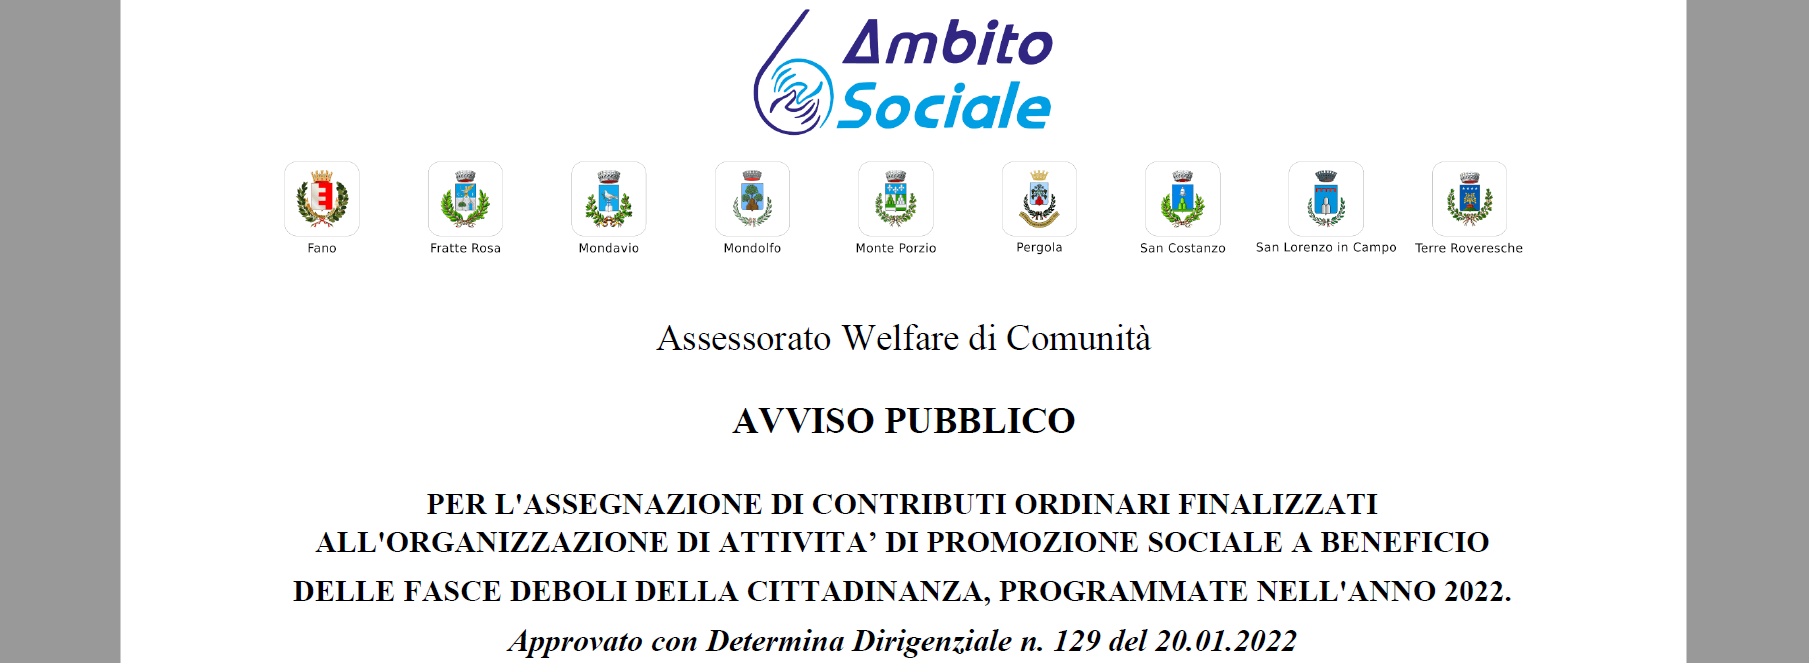 Avviso pubblico assegnazione contributi ordinari finalizzati all'organizzazione di attività di promozione sociale anno 2022